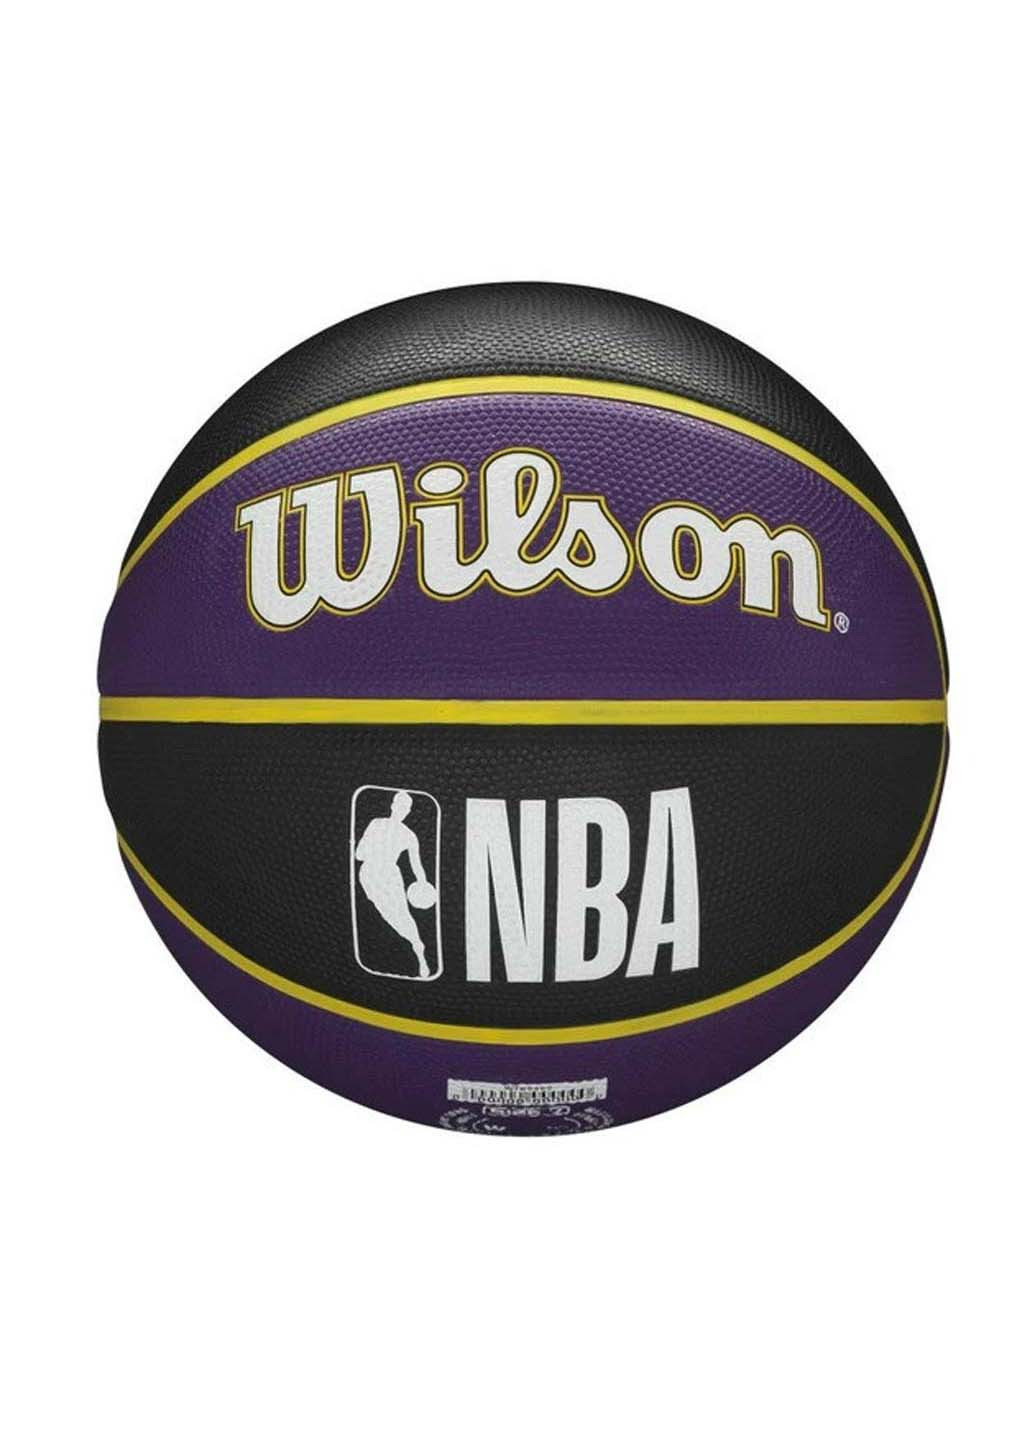 М'яч баскетбольний NBA Team Tribute Outdoor Size 7 Wilson (257606861)